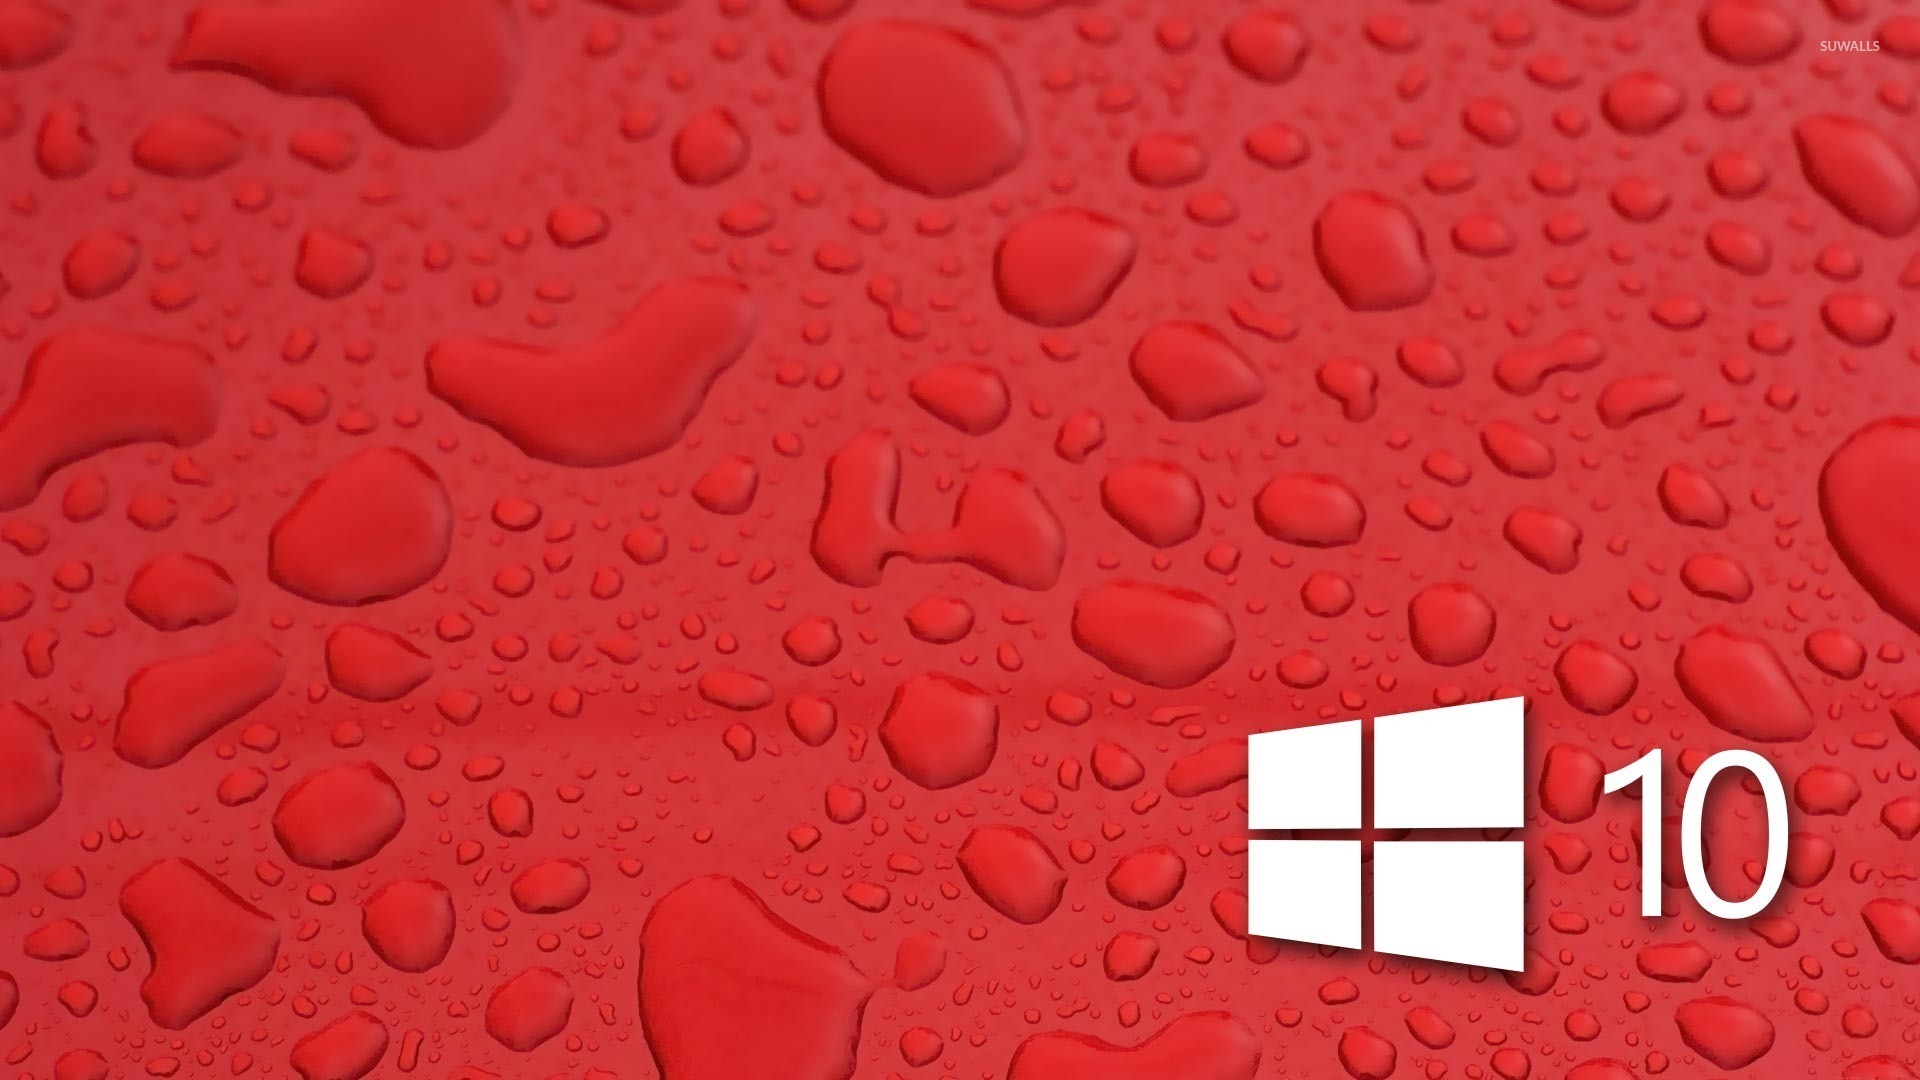 1920x1080 Windows 10 on water drops [3] wallpaper  jpg